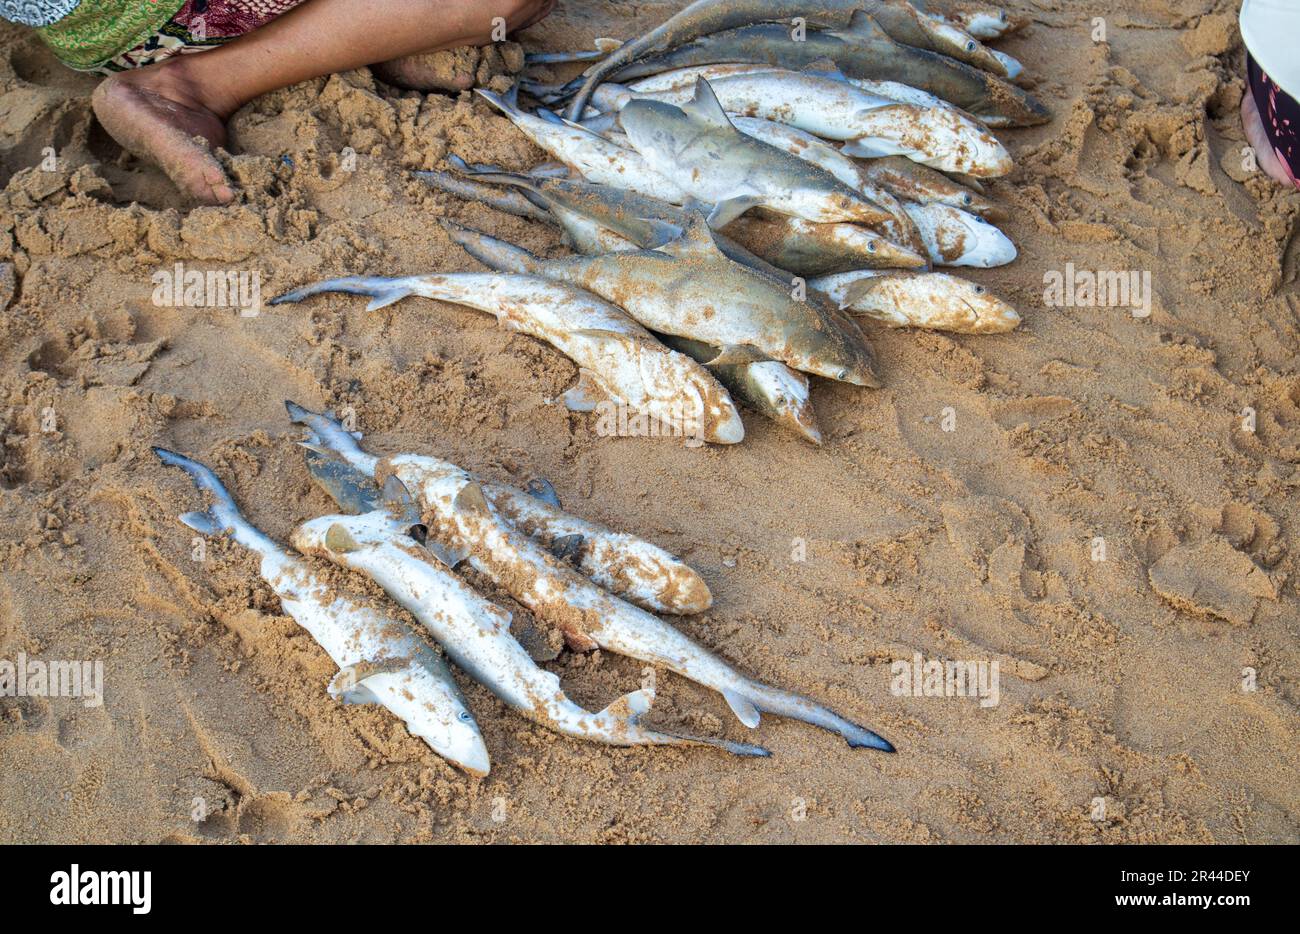 Babyhaie zum Verkauf auf einem lokalen Markt am Strand. Babyhaie werden von Fischern gefangen, um sie auf traditionellen Märkten in Indonesien zu konsumieren und zu verkaufen Stockfoto